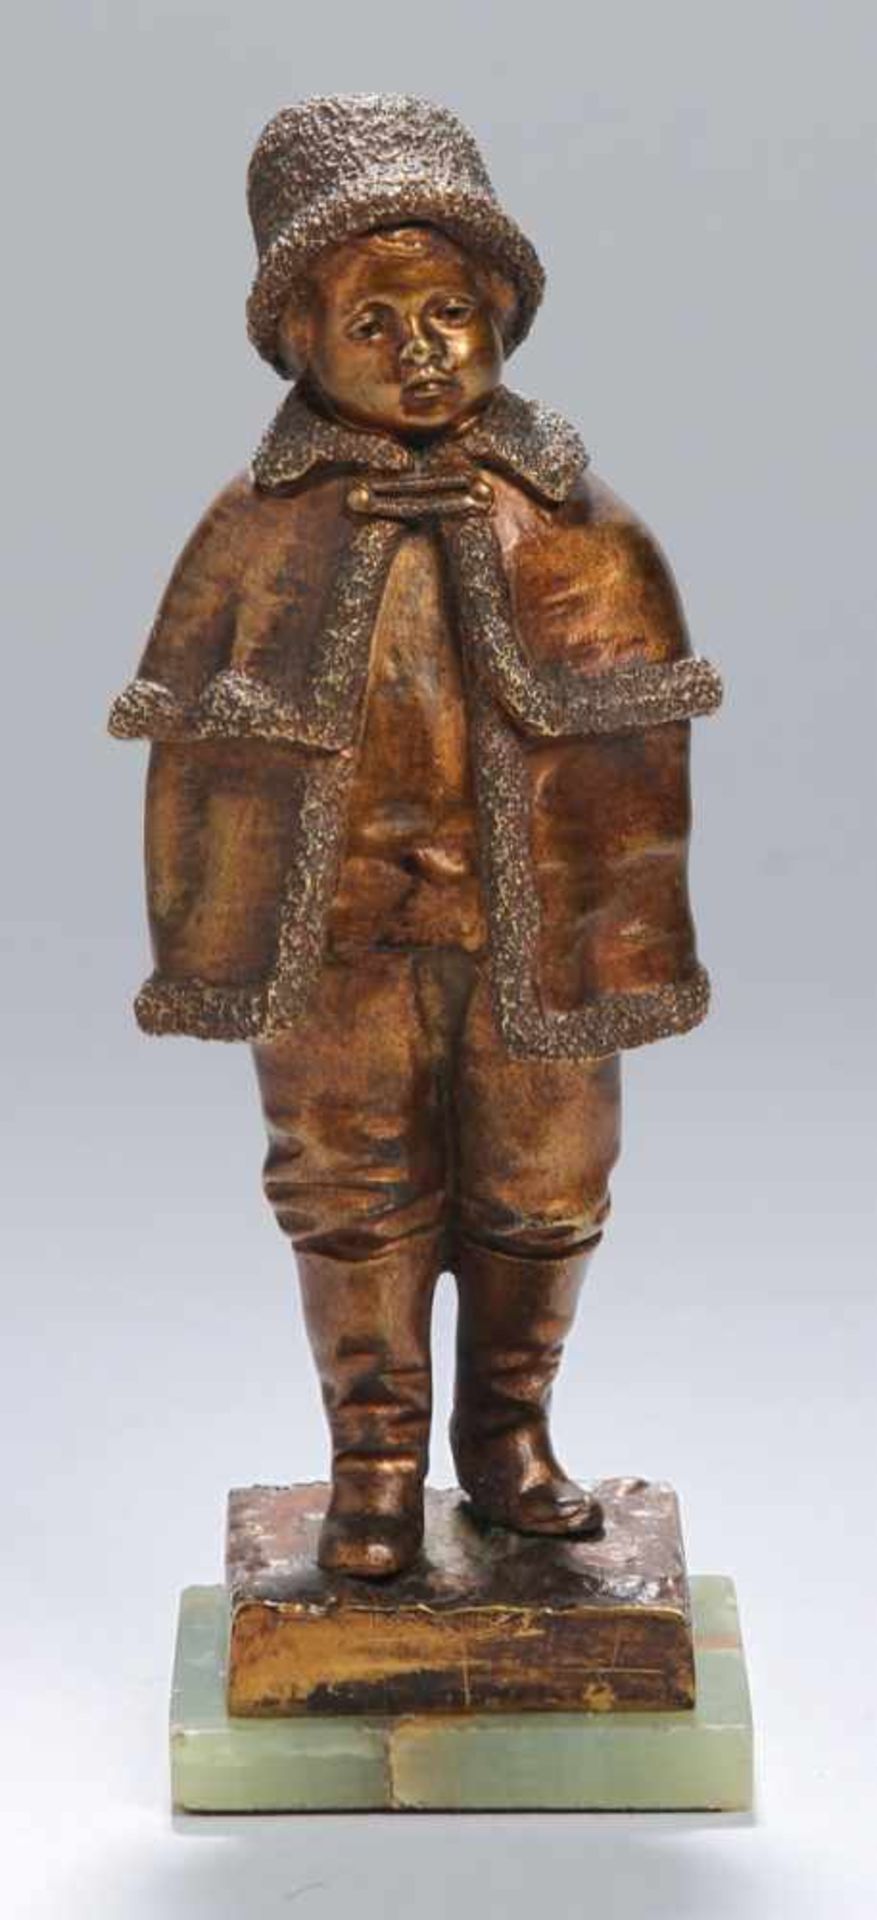 Bronze-Plastik, "Mädchen mit Mantel und Hut", Le Guluche, Joseph, französischer Bildhauer1849 -